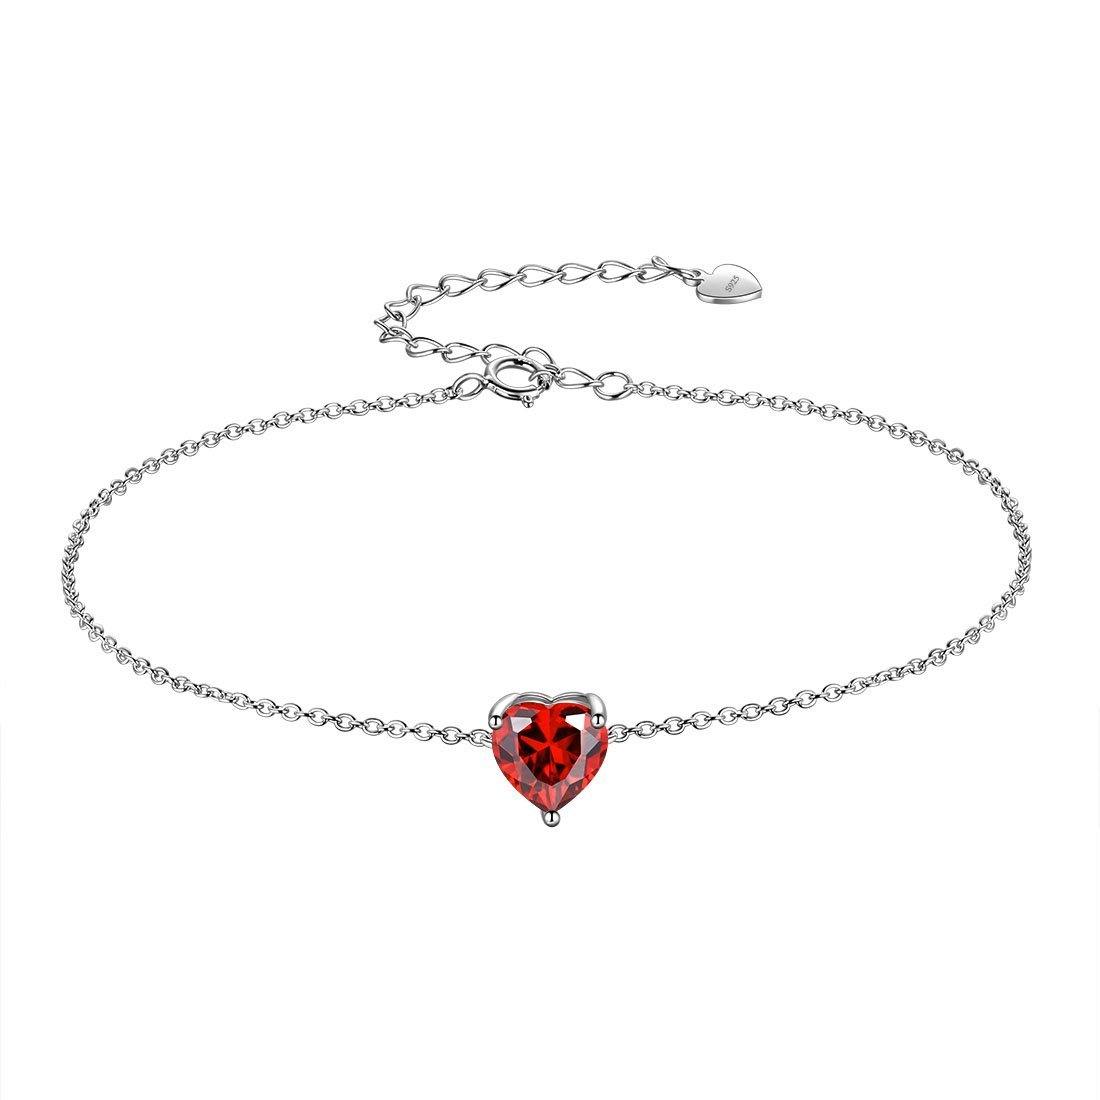 Women Birthstone Hearts Bracelets Sterling Silver January-Garnet Aurora Tears Jewelry